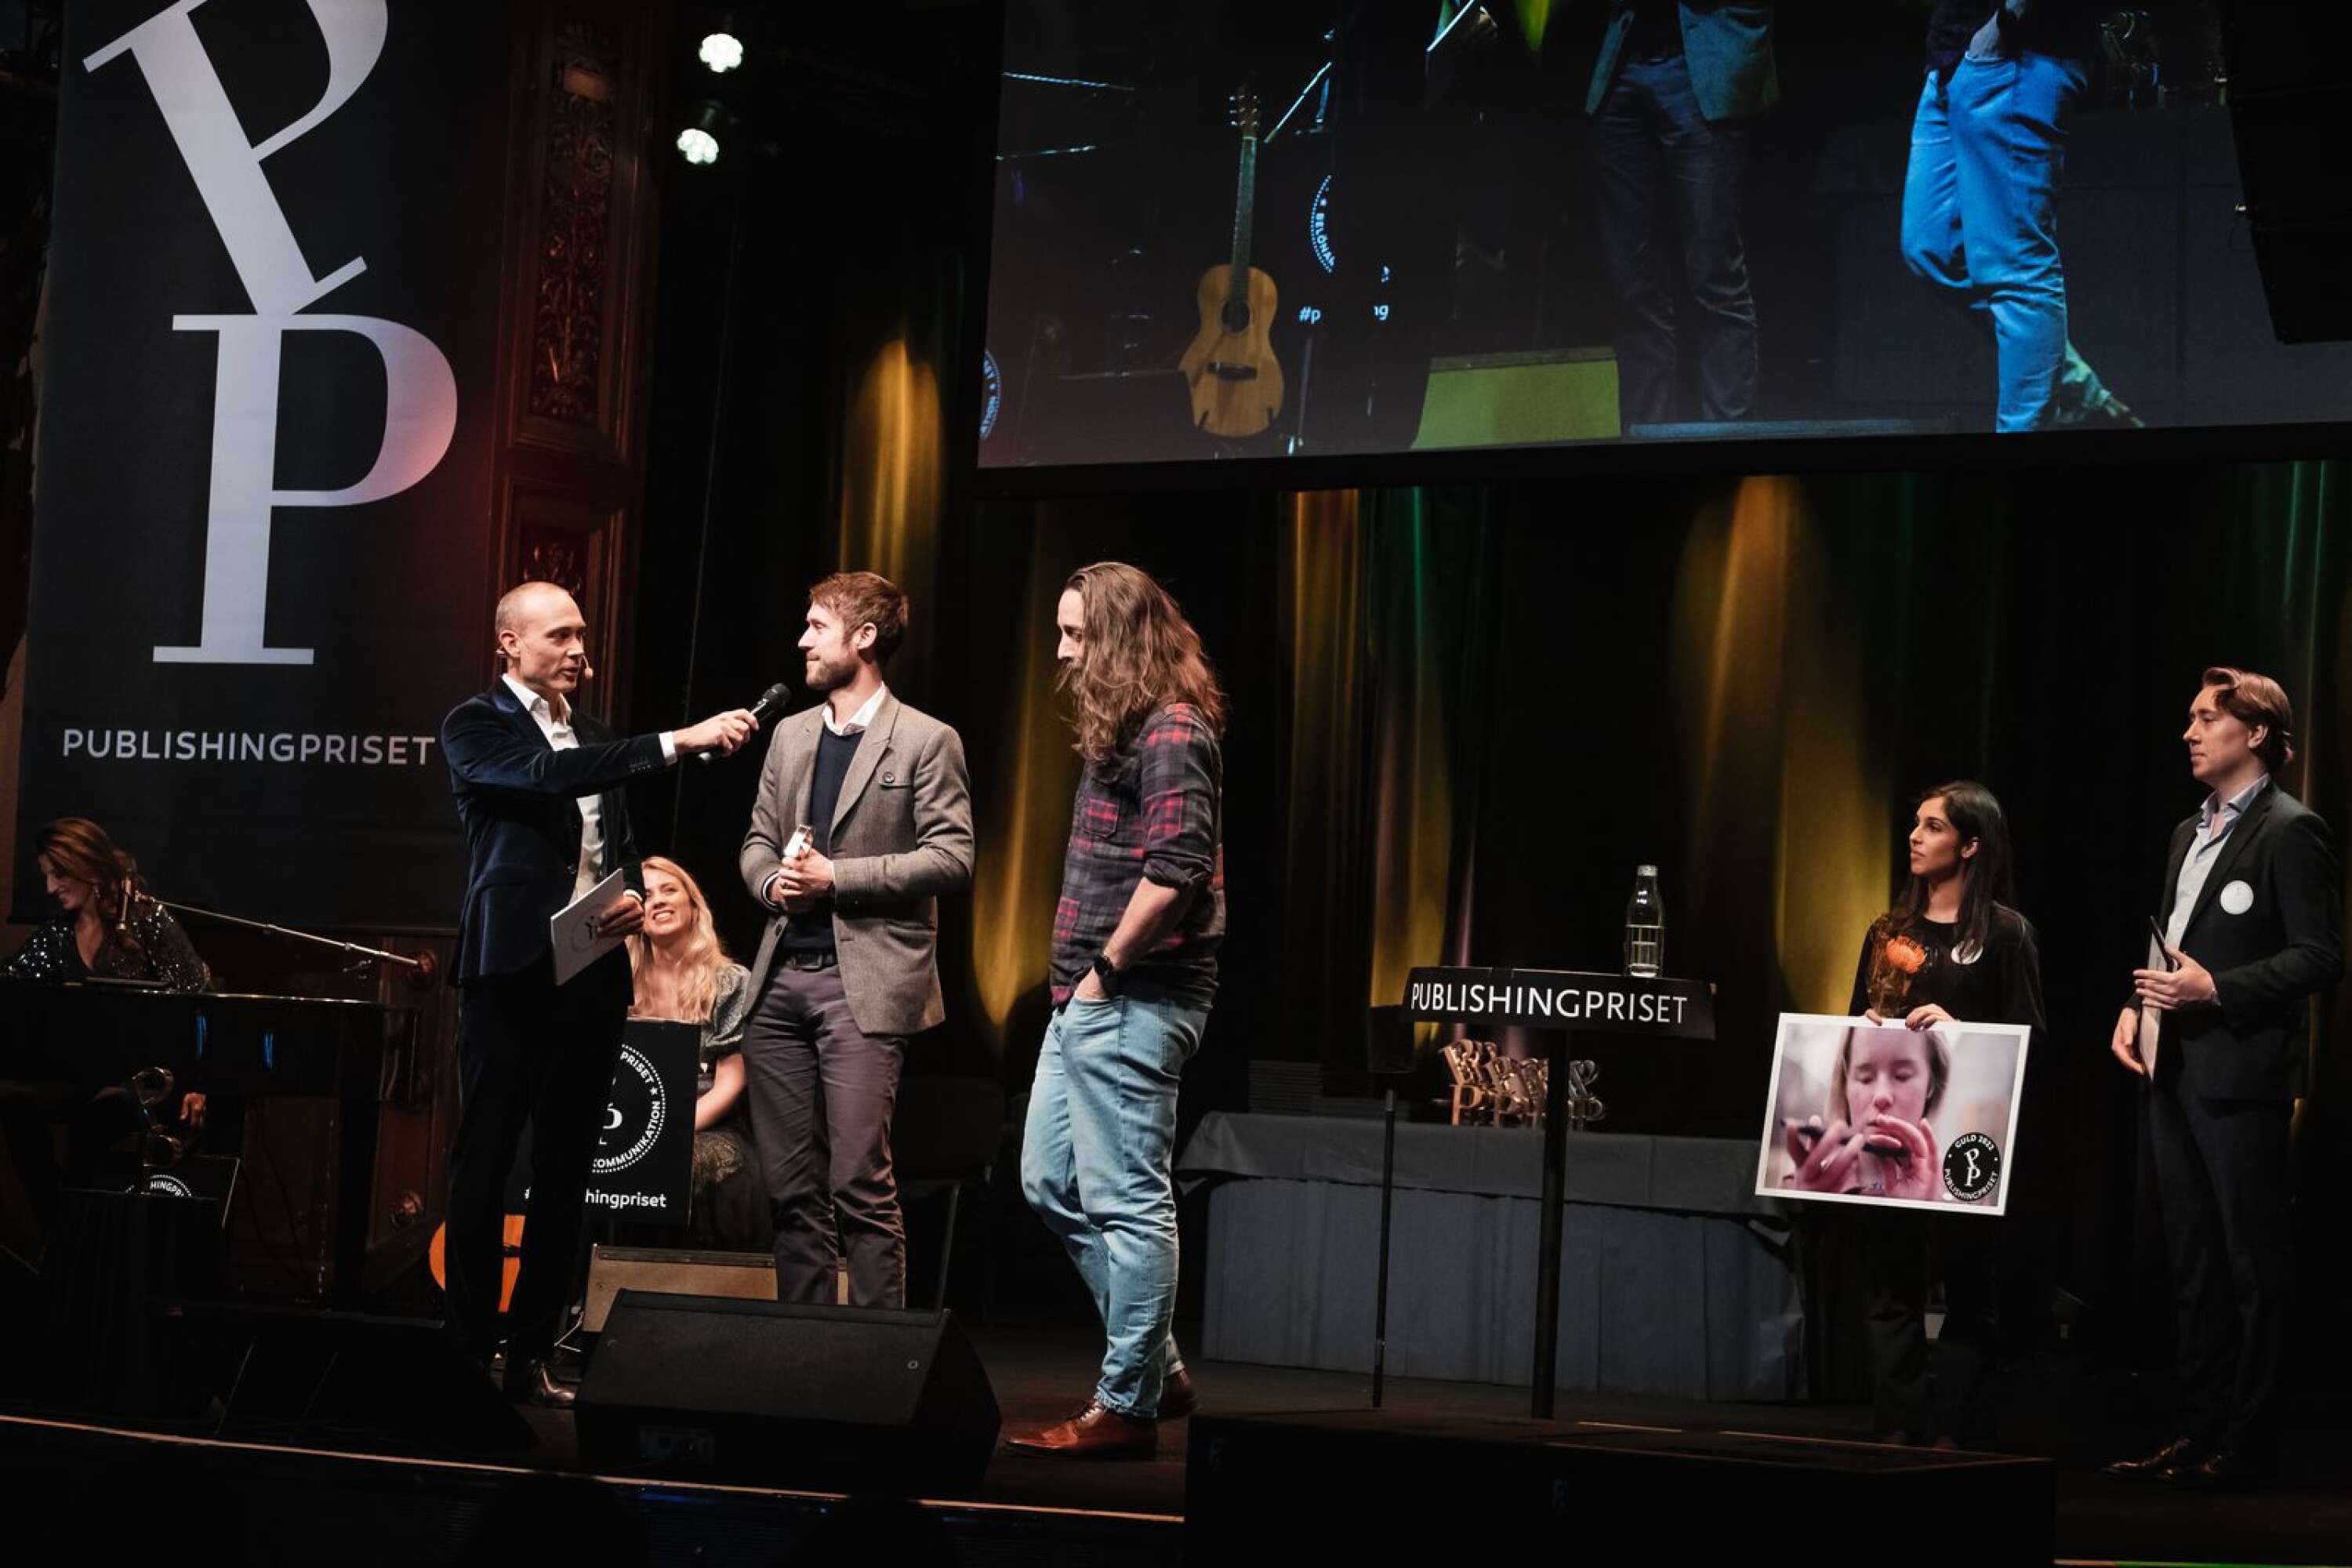 2022 tog Lars-Petter Steen emot pris i kategorin ”Varumärkesfilmer B2B” vid utdelningen av Publishingpriset.